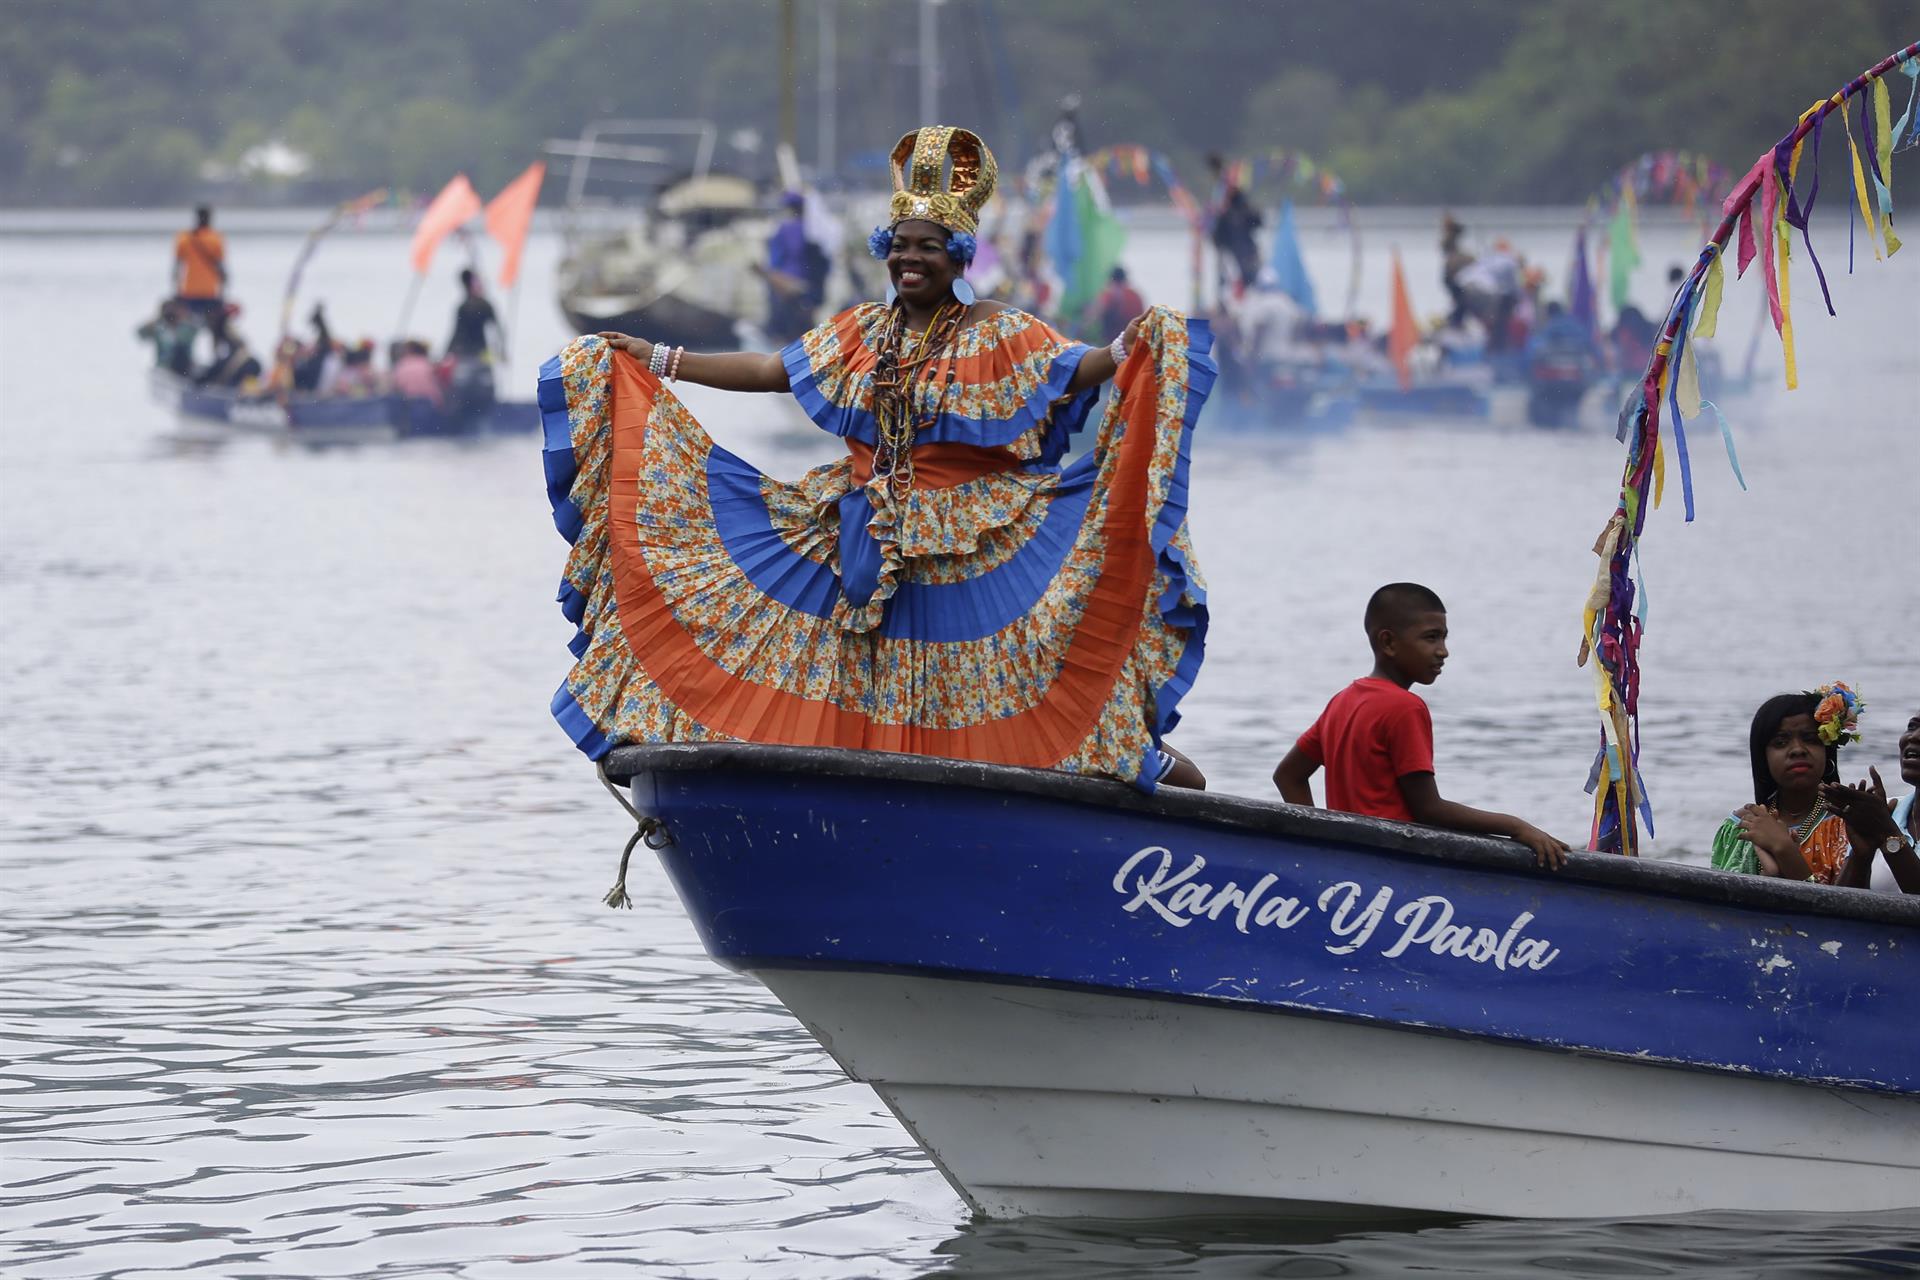 La fiesta afrocolonial de la Pollera Congo resalta atractivo turístico de Panamá